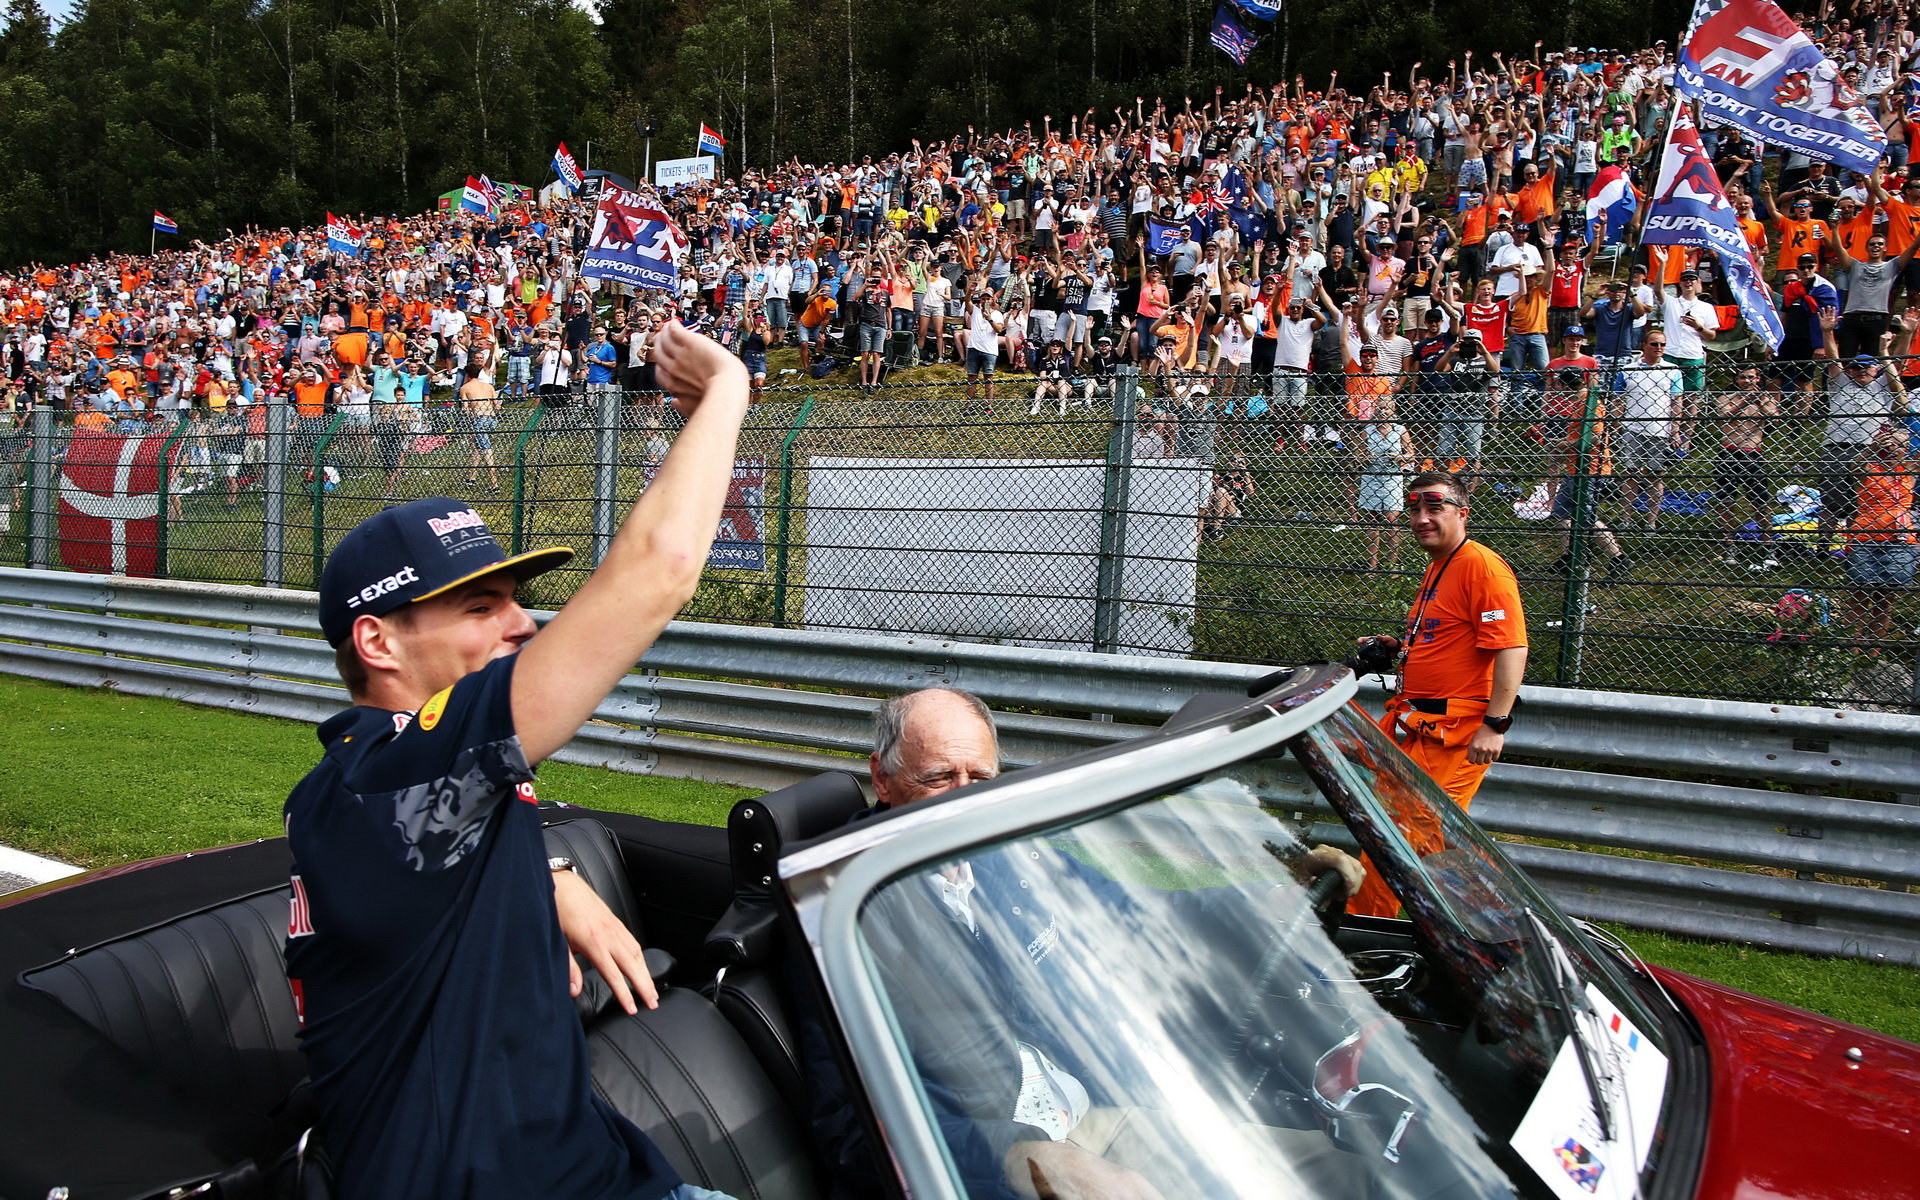 Fanoušci Maxe Verstappena v závodě v Belgii